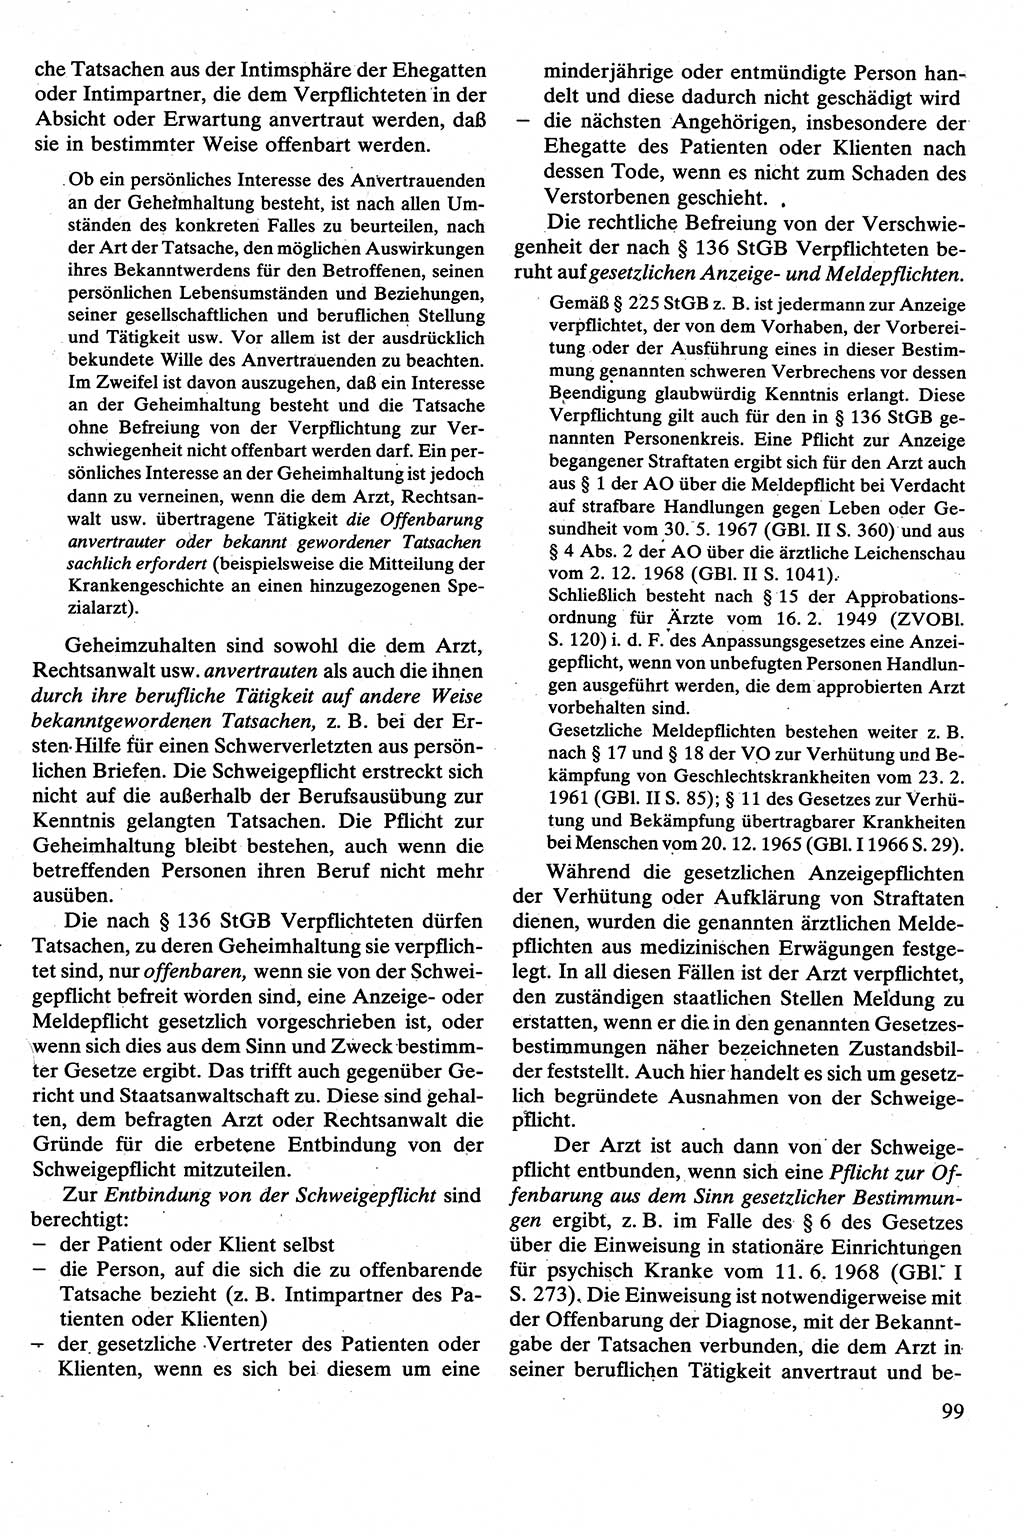 Strafrecht [Deutsche Demokratische Republik (DDR)], Besonderer Teil, Lehrbuch 1981, Seite 99 (Strafr. DDR BT Lb. 1981, S. 99)